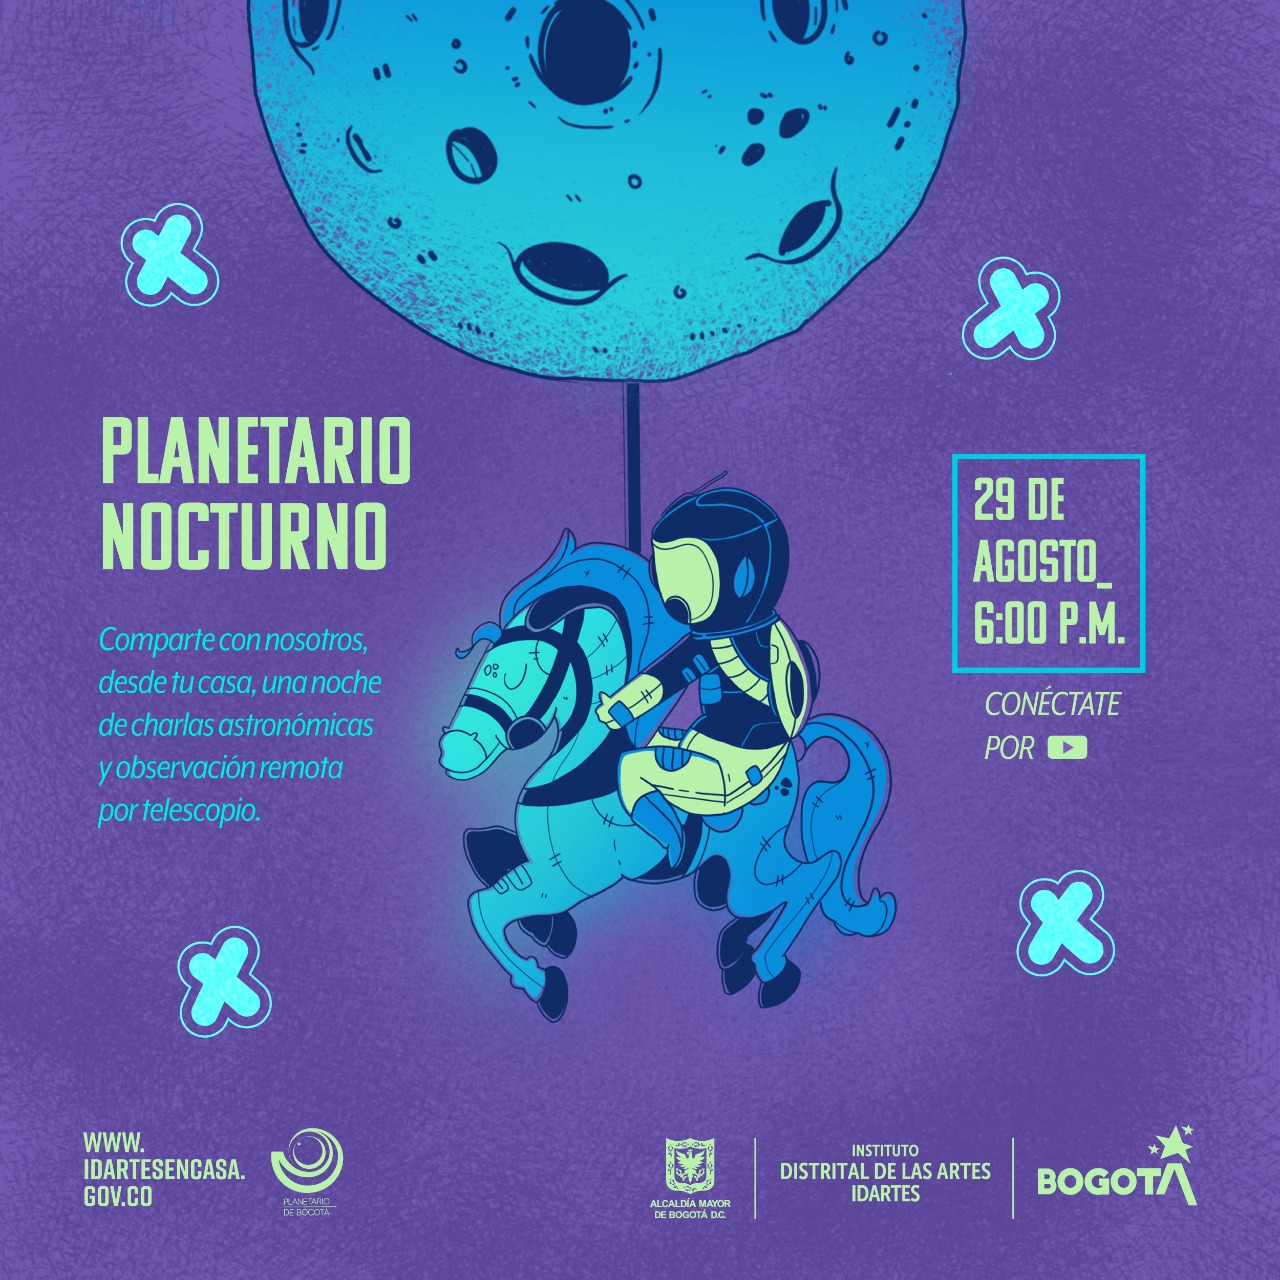 Planetario Nocturno será virtual